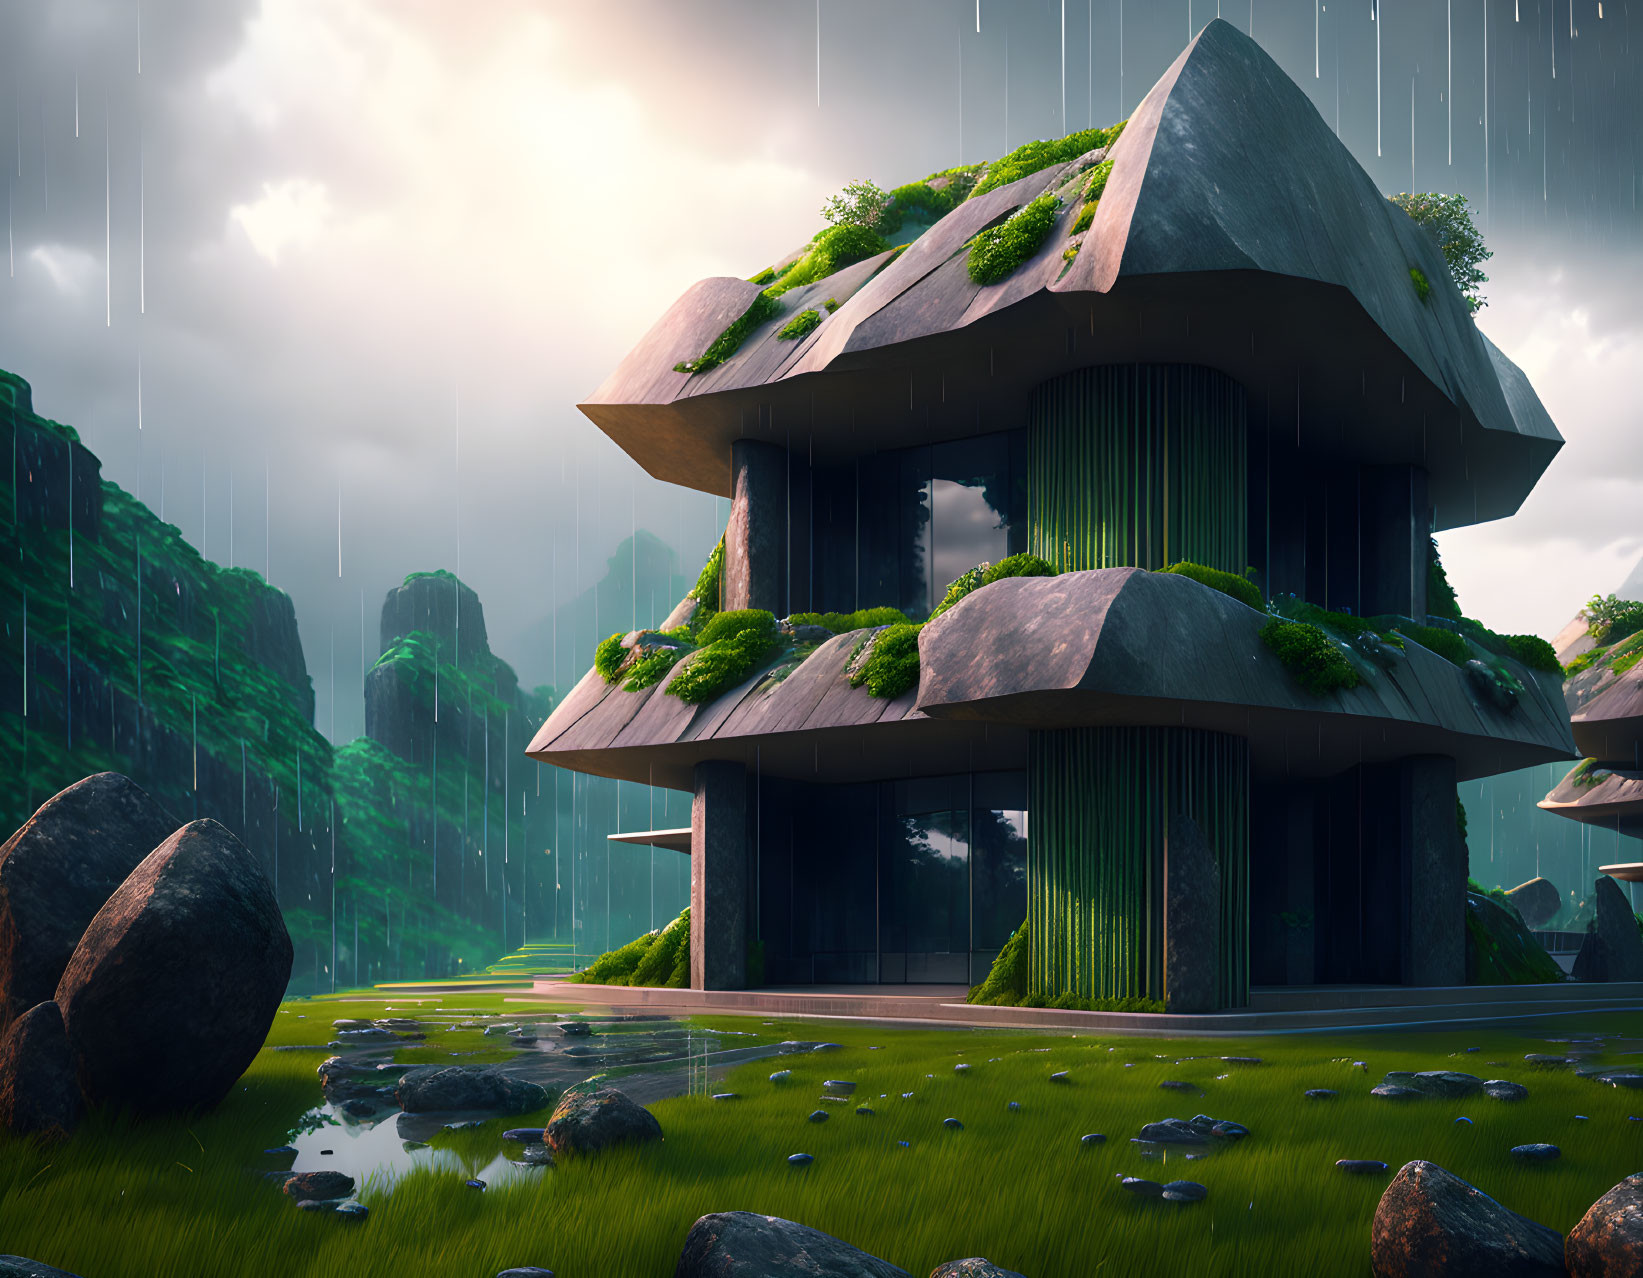 Futuristic mushroom-shaped house in rainy landscape